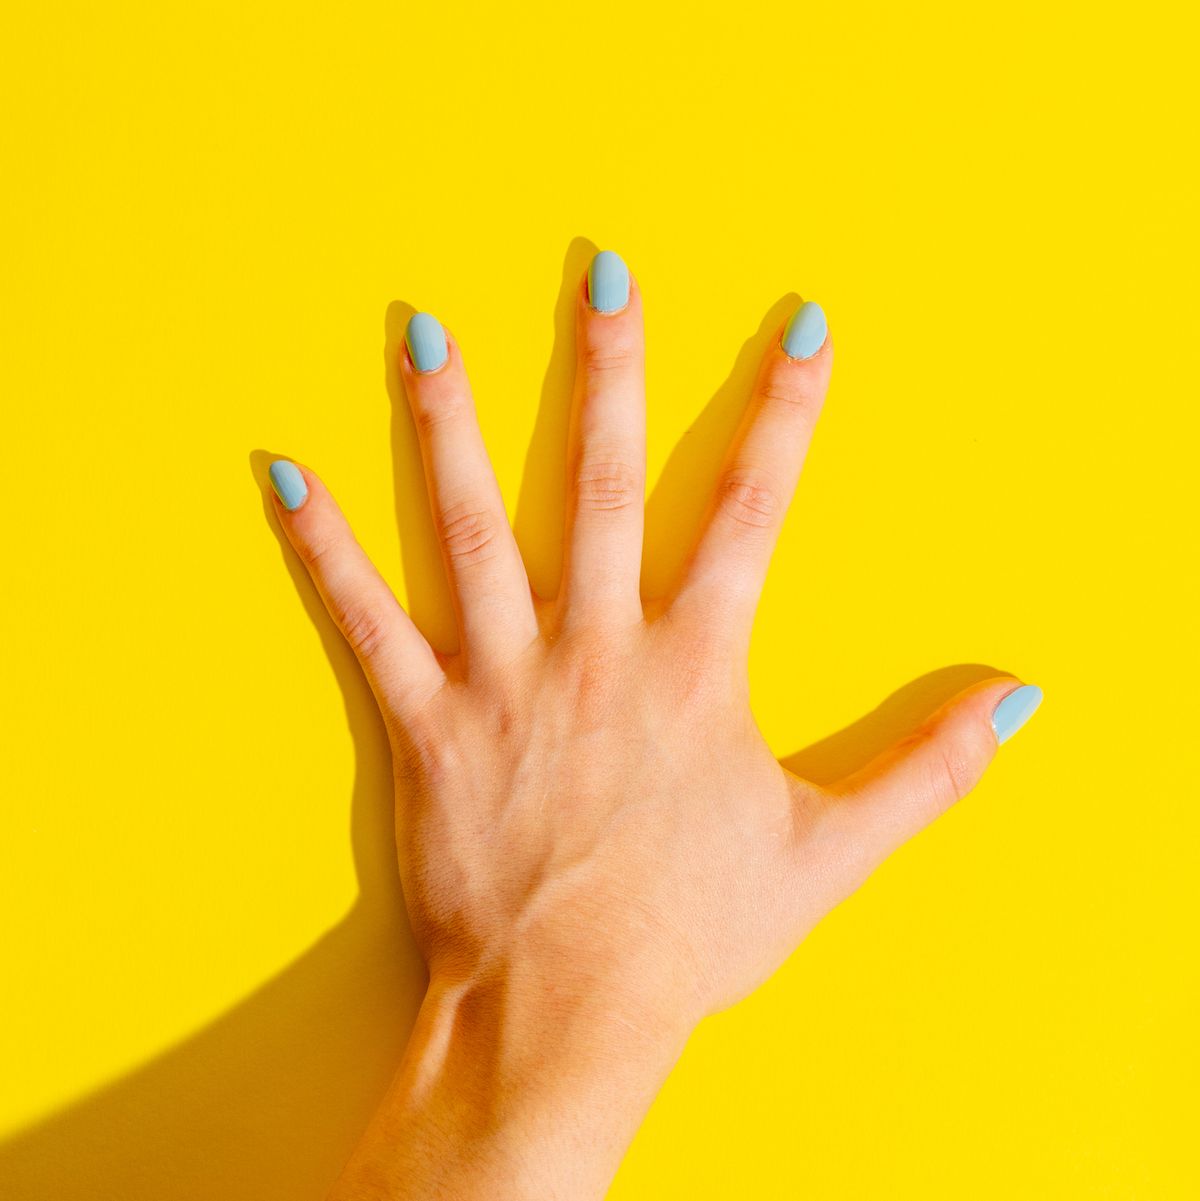 Tẩy móng (Remove nails): Làn da mềm mại và đôi tay trắng sáng sẽ tạo nên sự tự tin và thu hút đối với mọi người xung quanh. Với dịch vụ tẩy móng chuyên nghiệp của chúng tôi, bạn sẽ có được những đôi tay đẹp nhất. Hãy đến và trải nghiệm ngay hôm nay.